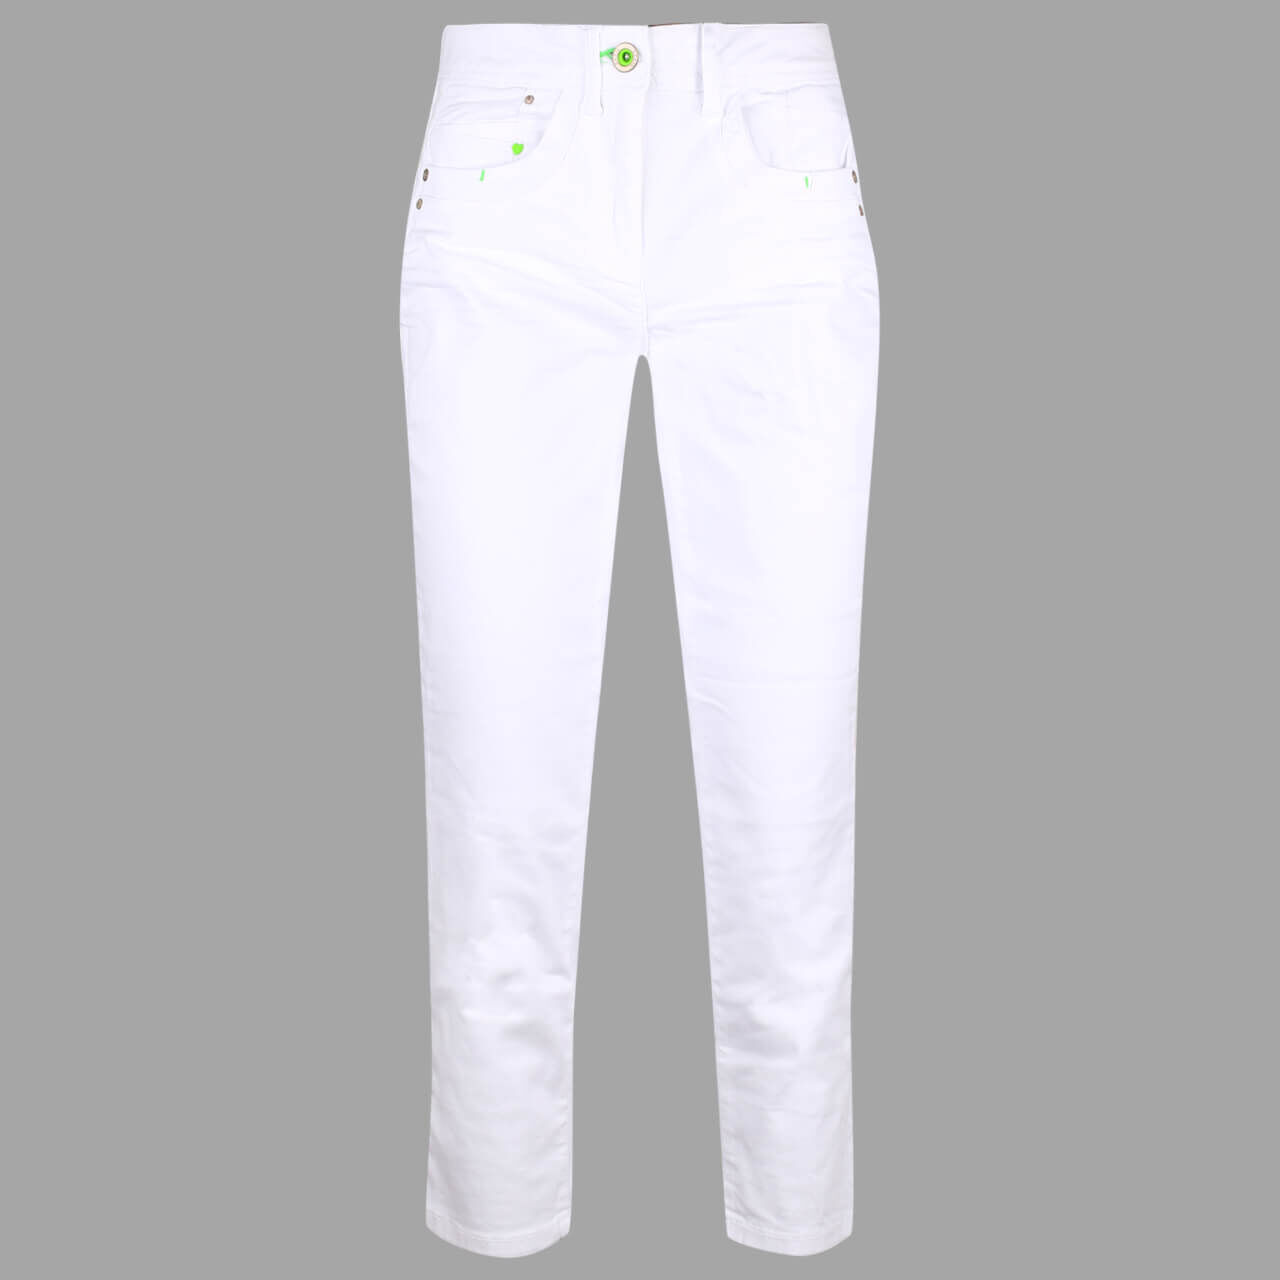 Cecil New York 7/8 Baumwollhose für Damen in Weiß, FarbNr.: 10000